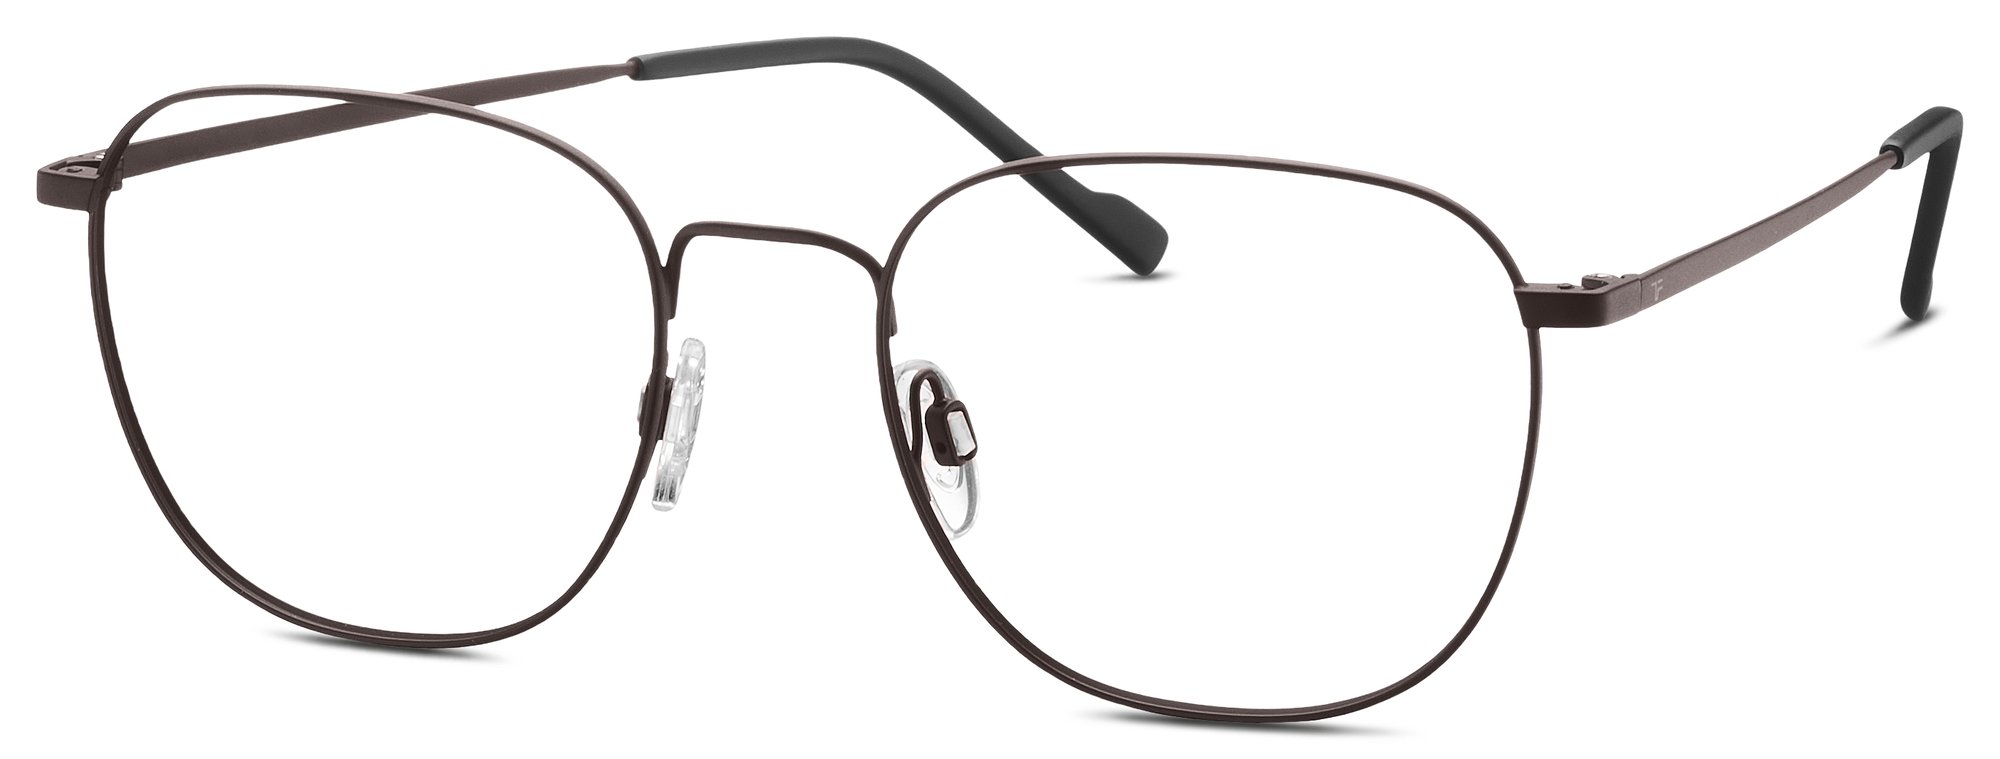 Das Bild zeigt die Korrektionsbrille 820957 60 von der Marke Titanflex in braun.